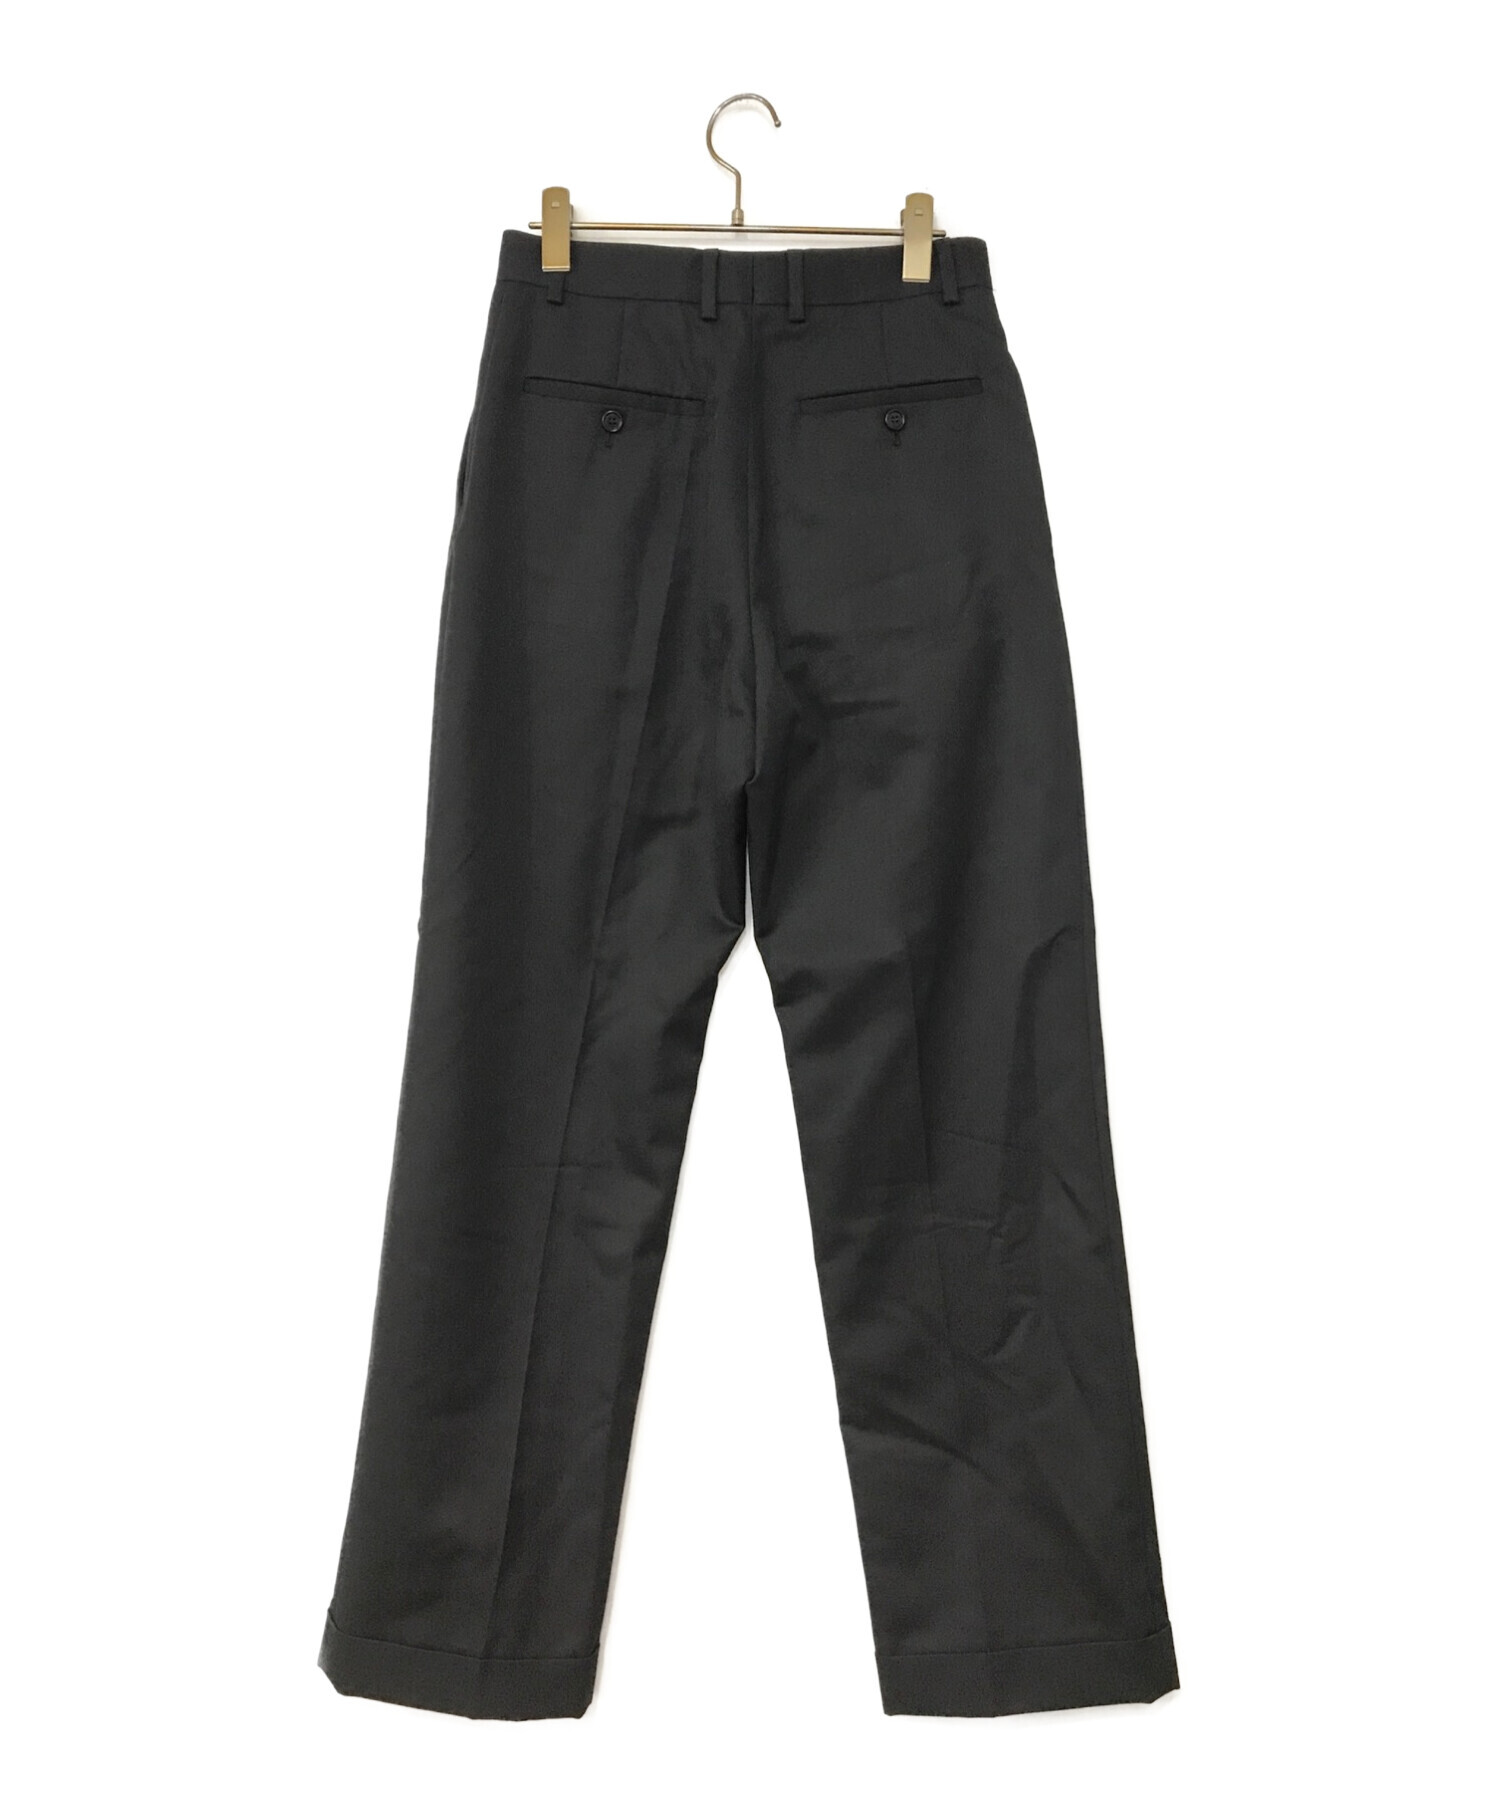 中古・古着通販】CELINE (セリーヌ) new wave pants ブラック サイズ 